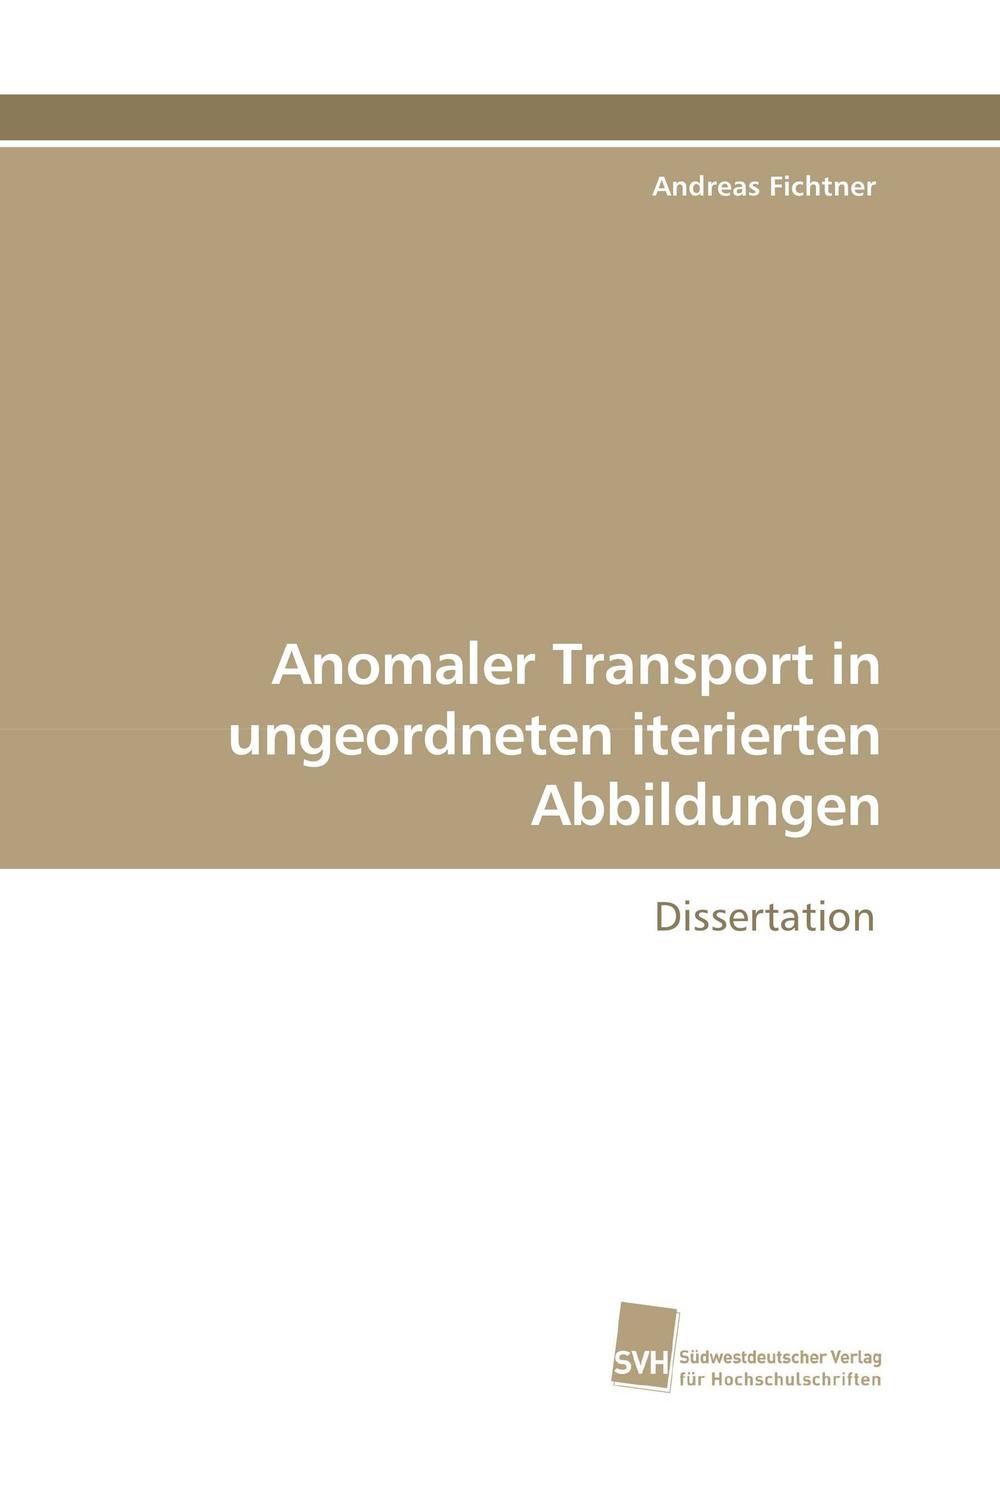 Anomaler Transport in ungeordneten iterierten Abbildungen - Andreas Fichtner